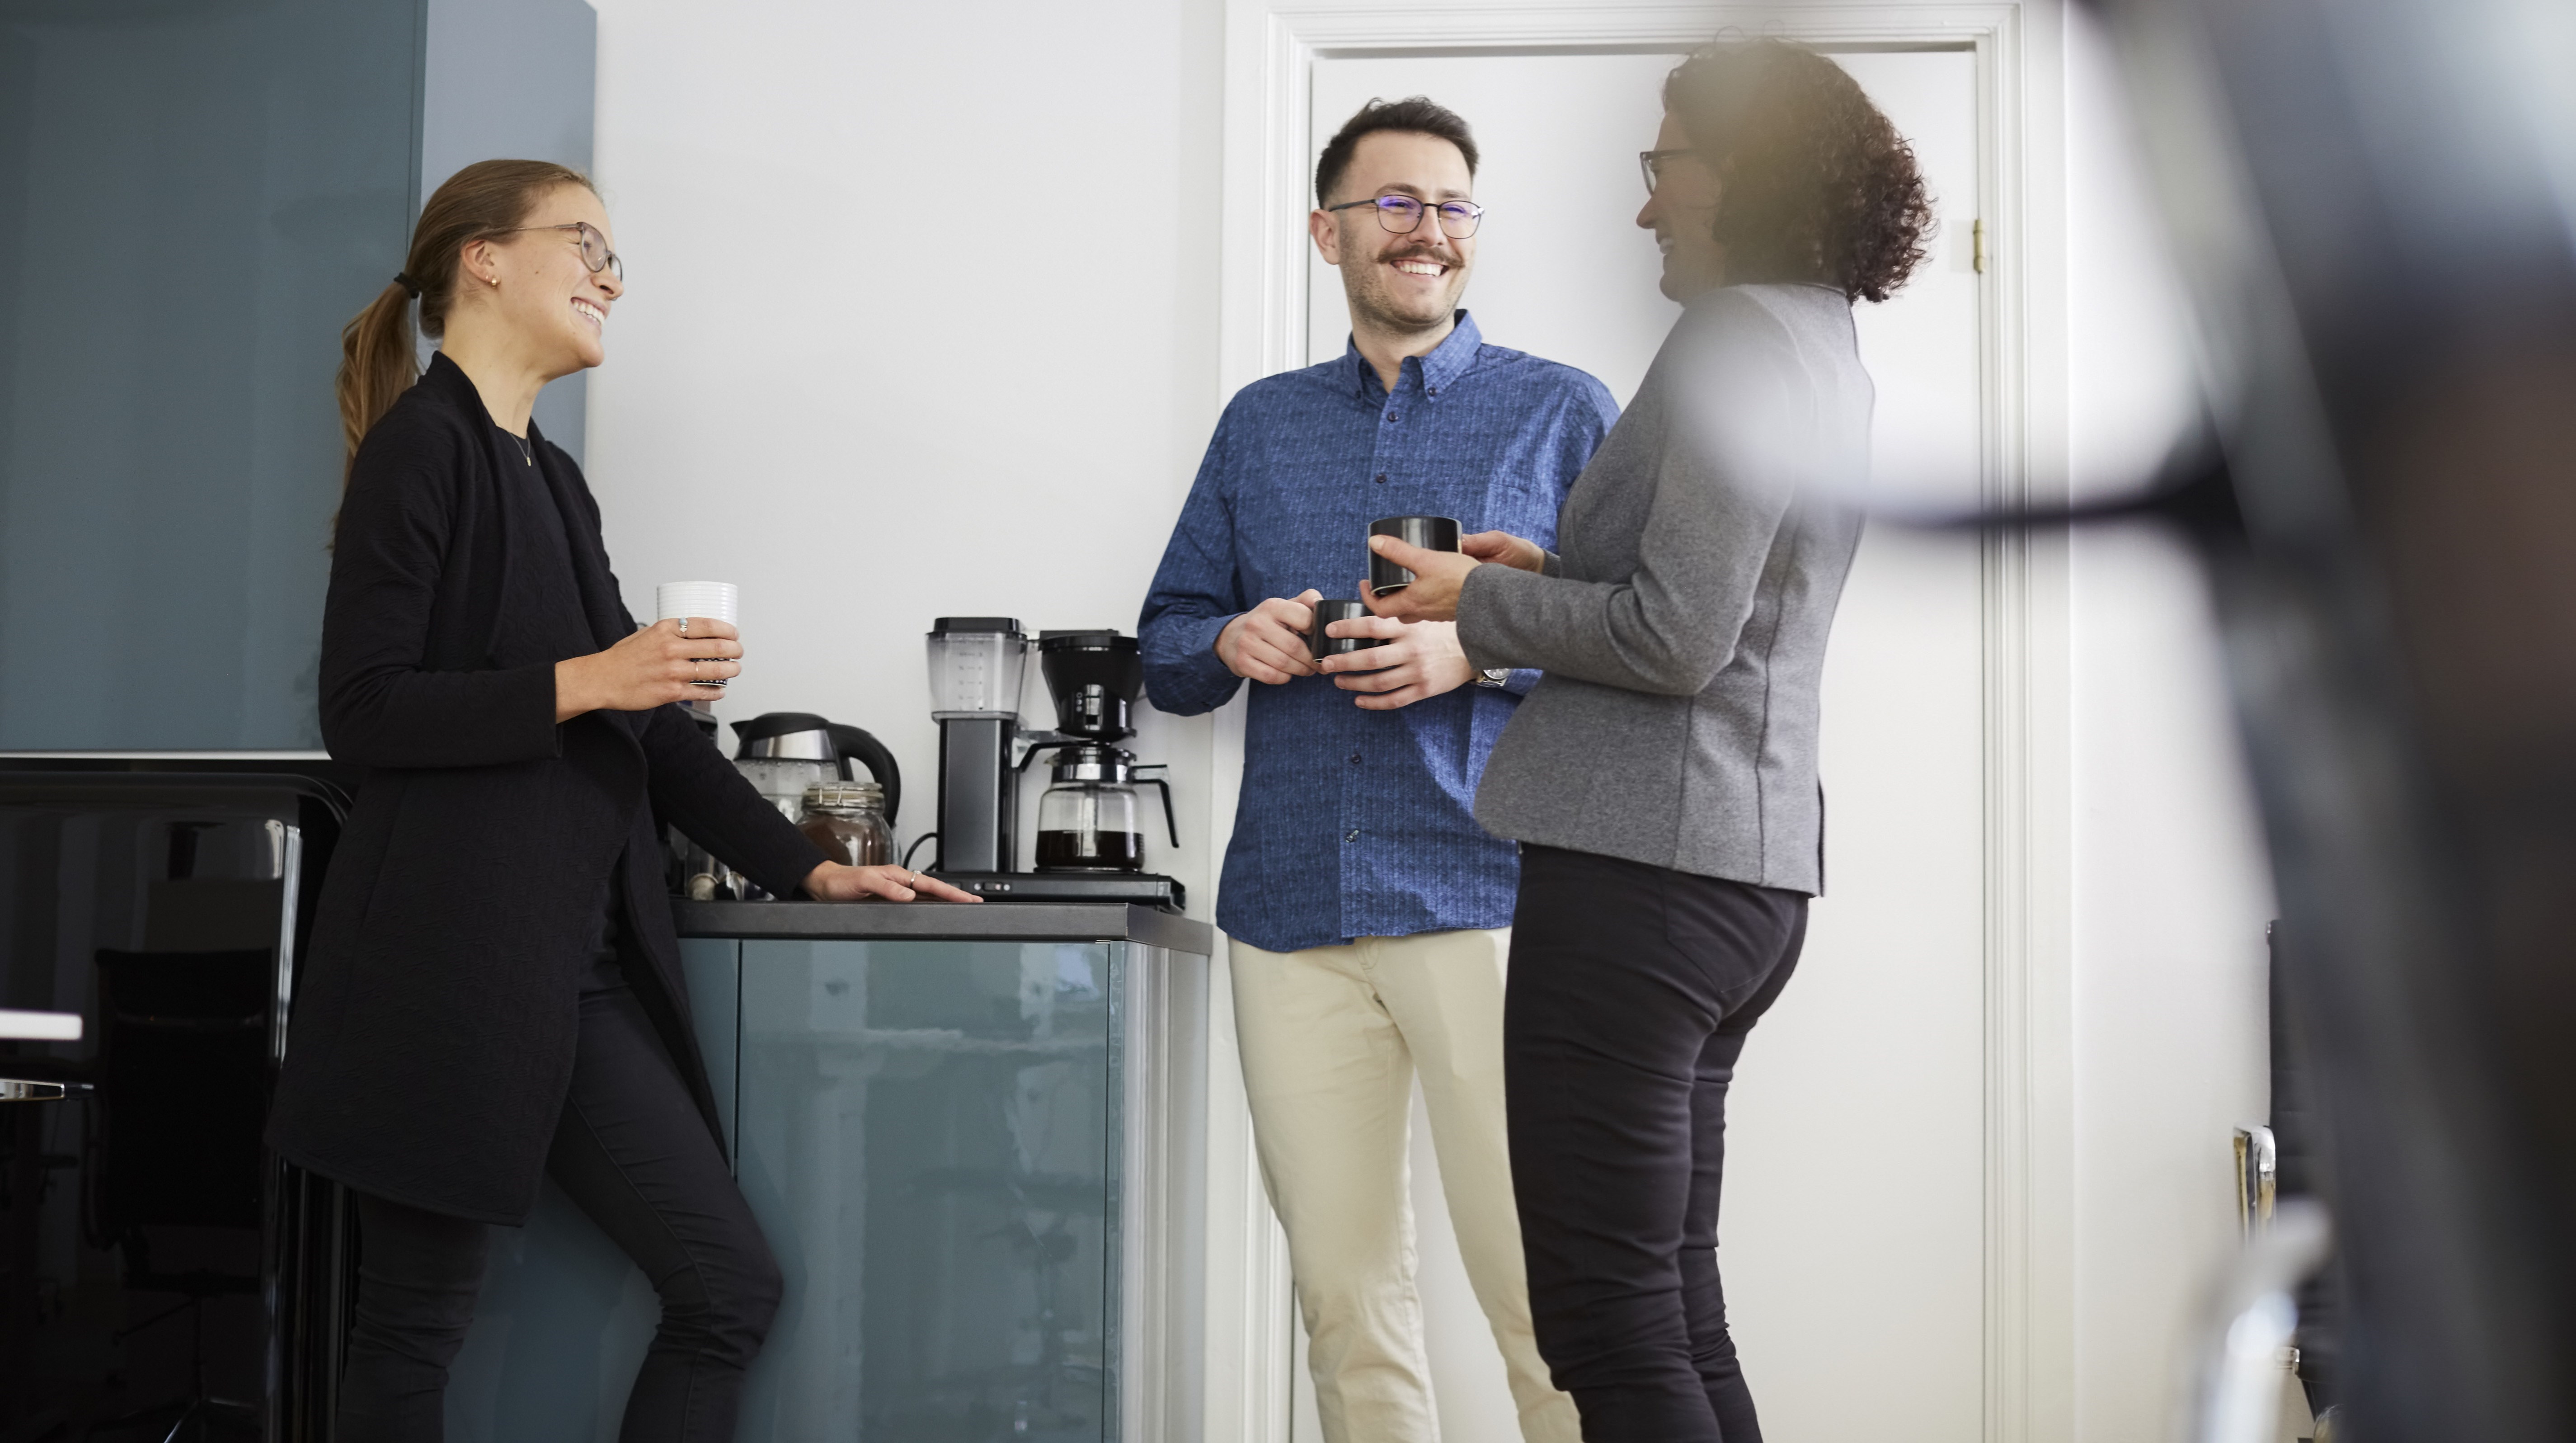 Kollegor pratar och skrattar vid kaffemaskinen